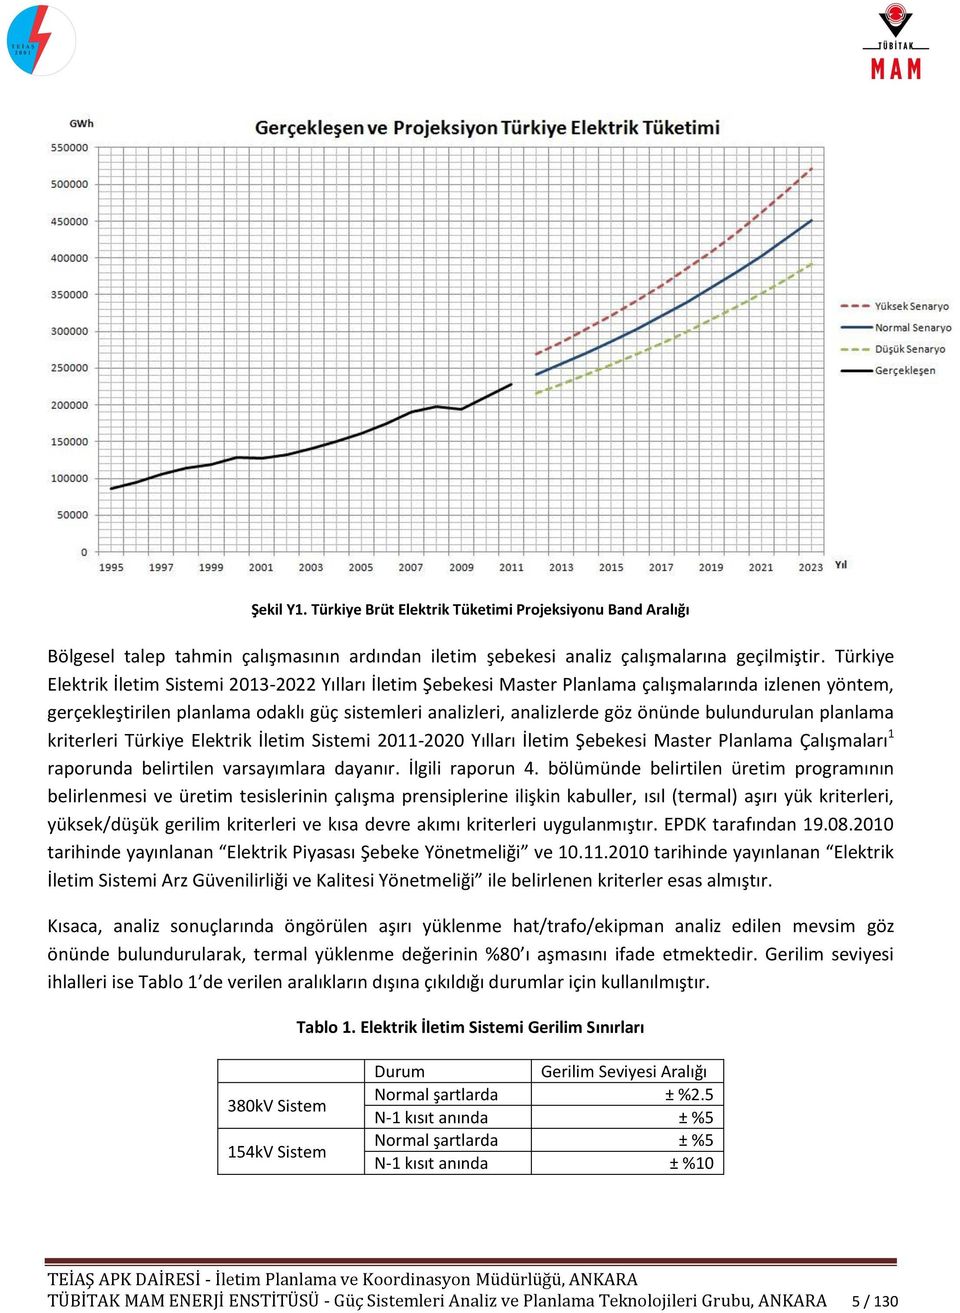 bulundurulan planlama kriterleri Türkiye Elektrik İletim Sistemi 2011-2020 Yılları İletim Şebekesi Master Planlama Çalışmaları 1 raporunda belirtilen varsayımlara dayanır. İlgili raporun 4.